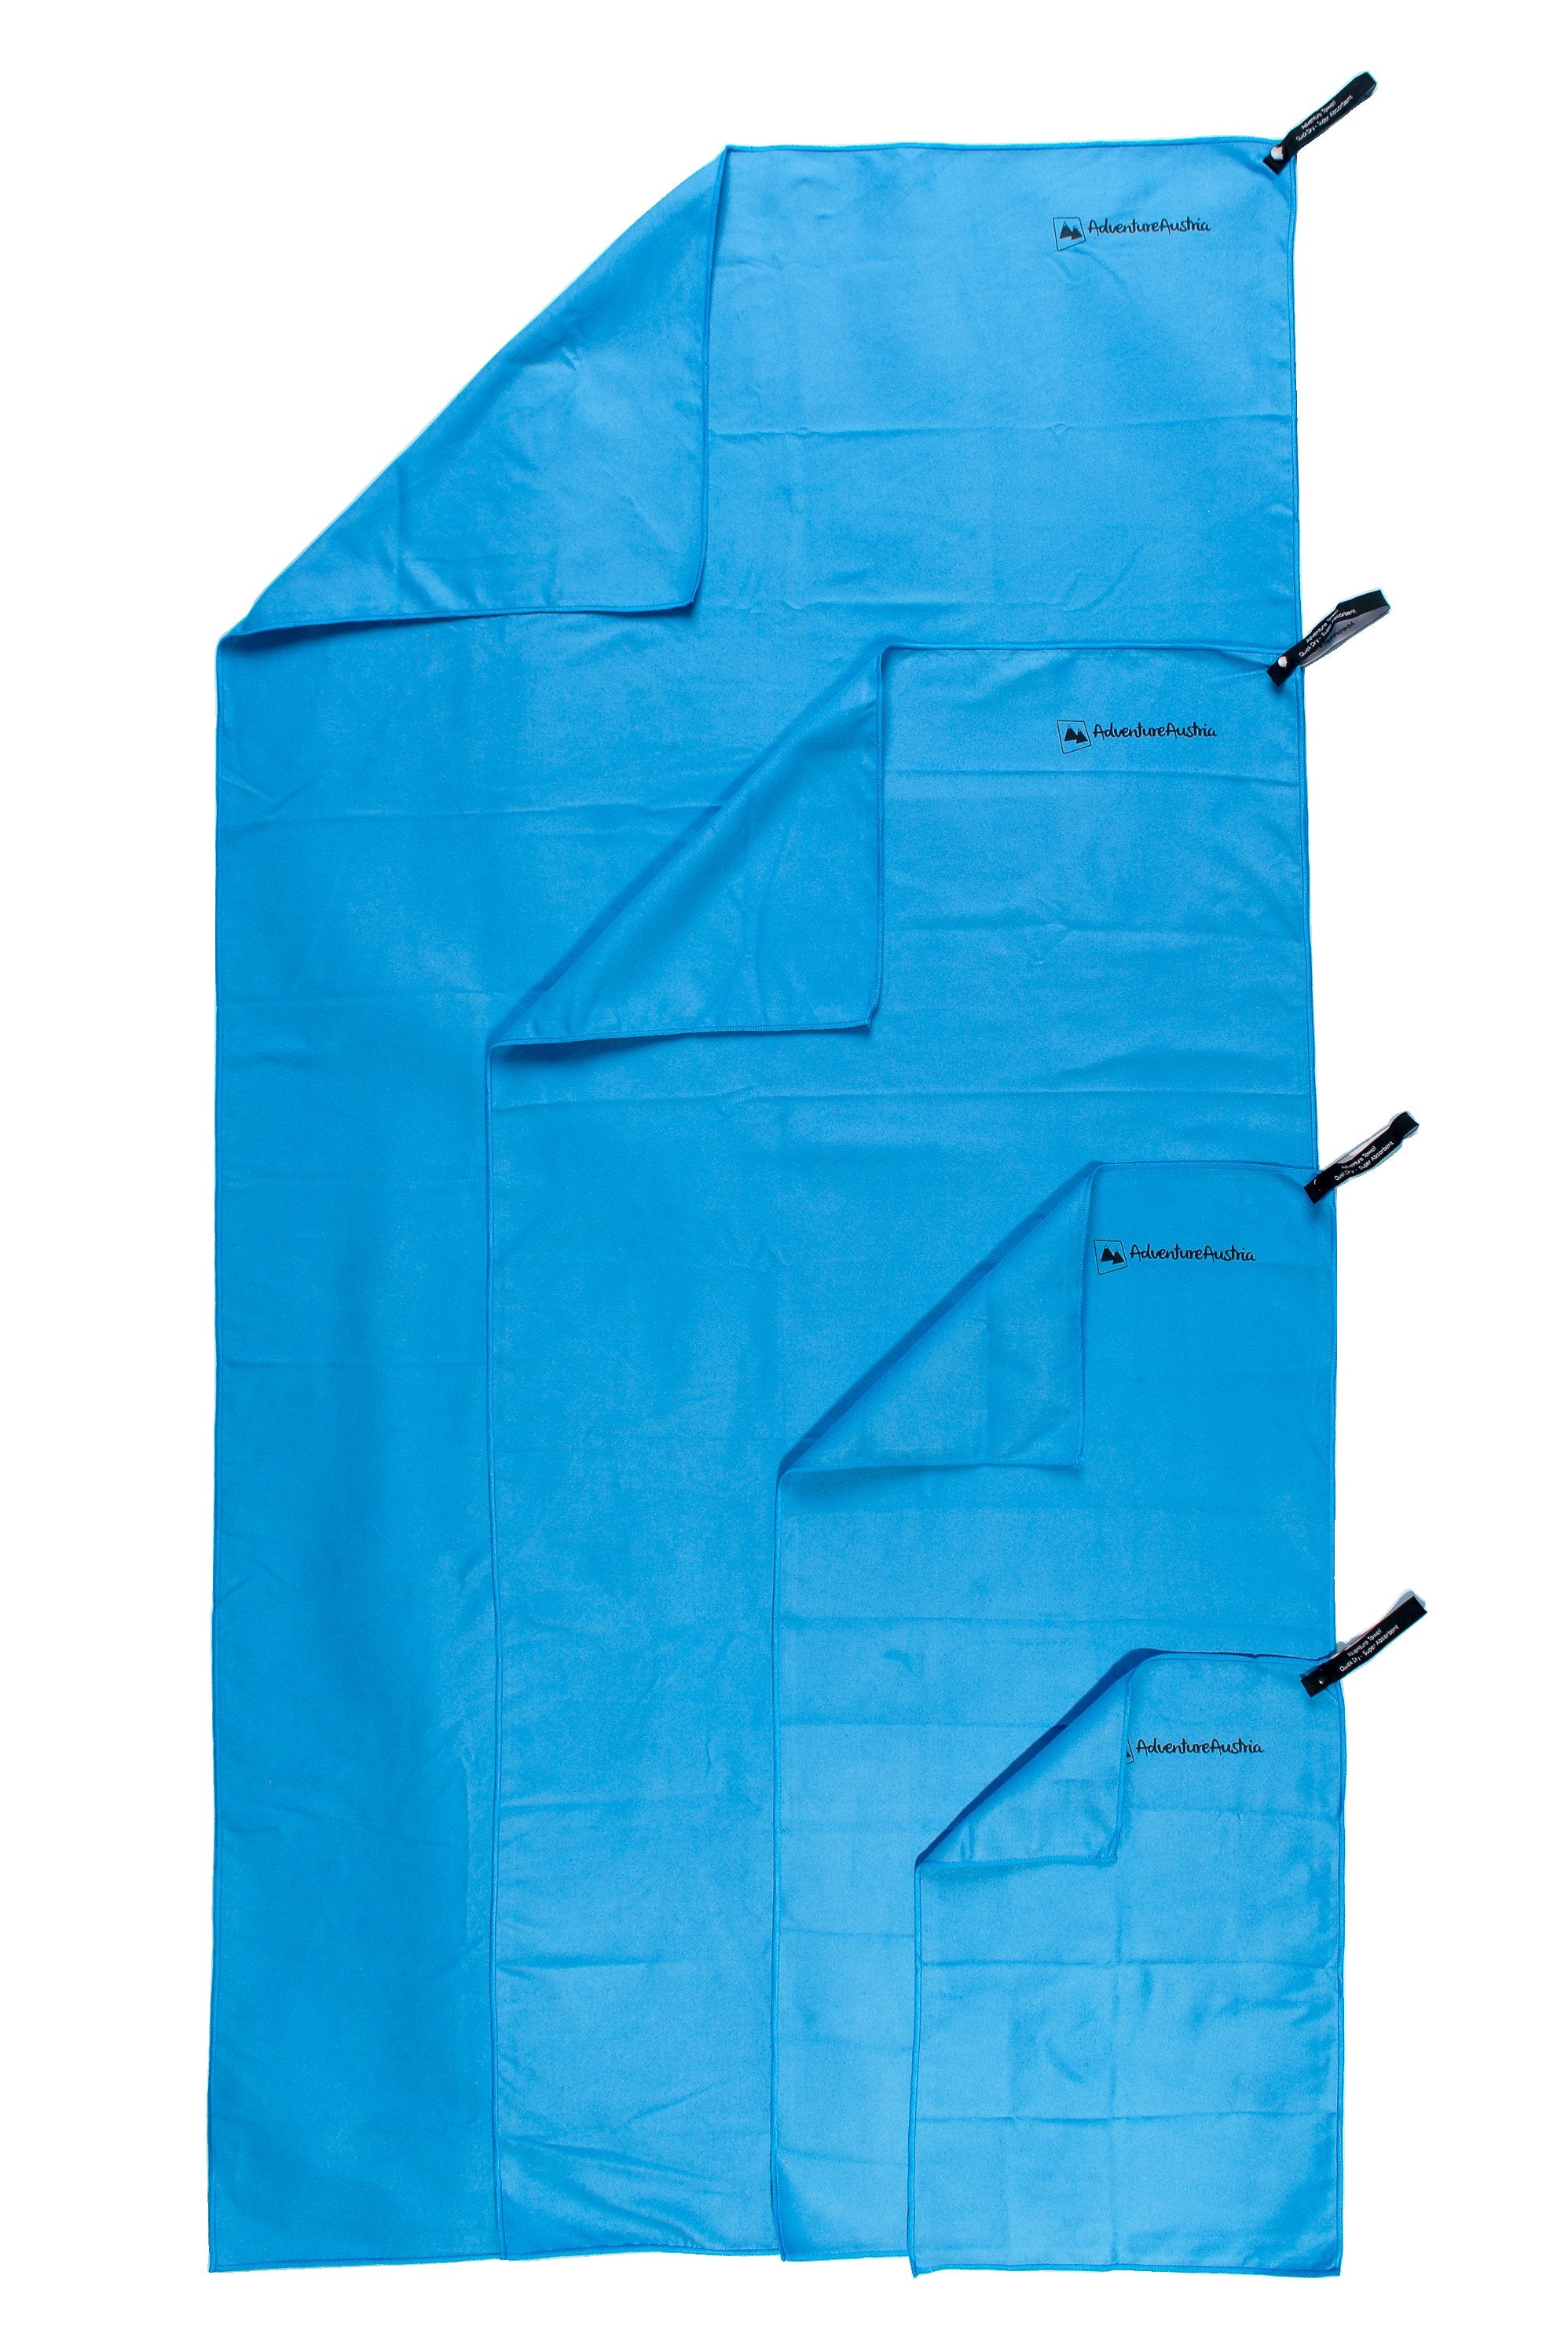 blue microfibre towels